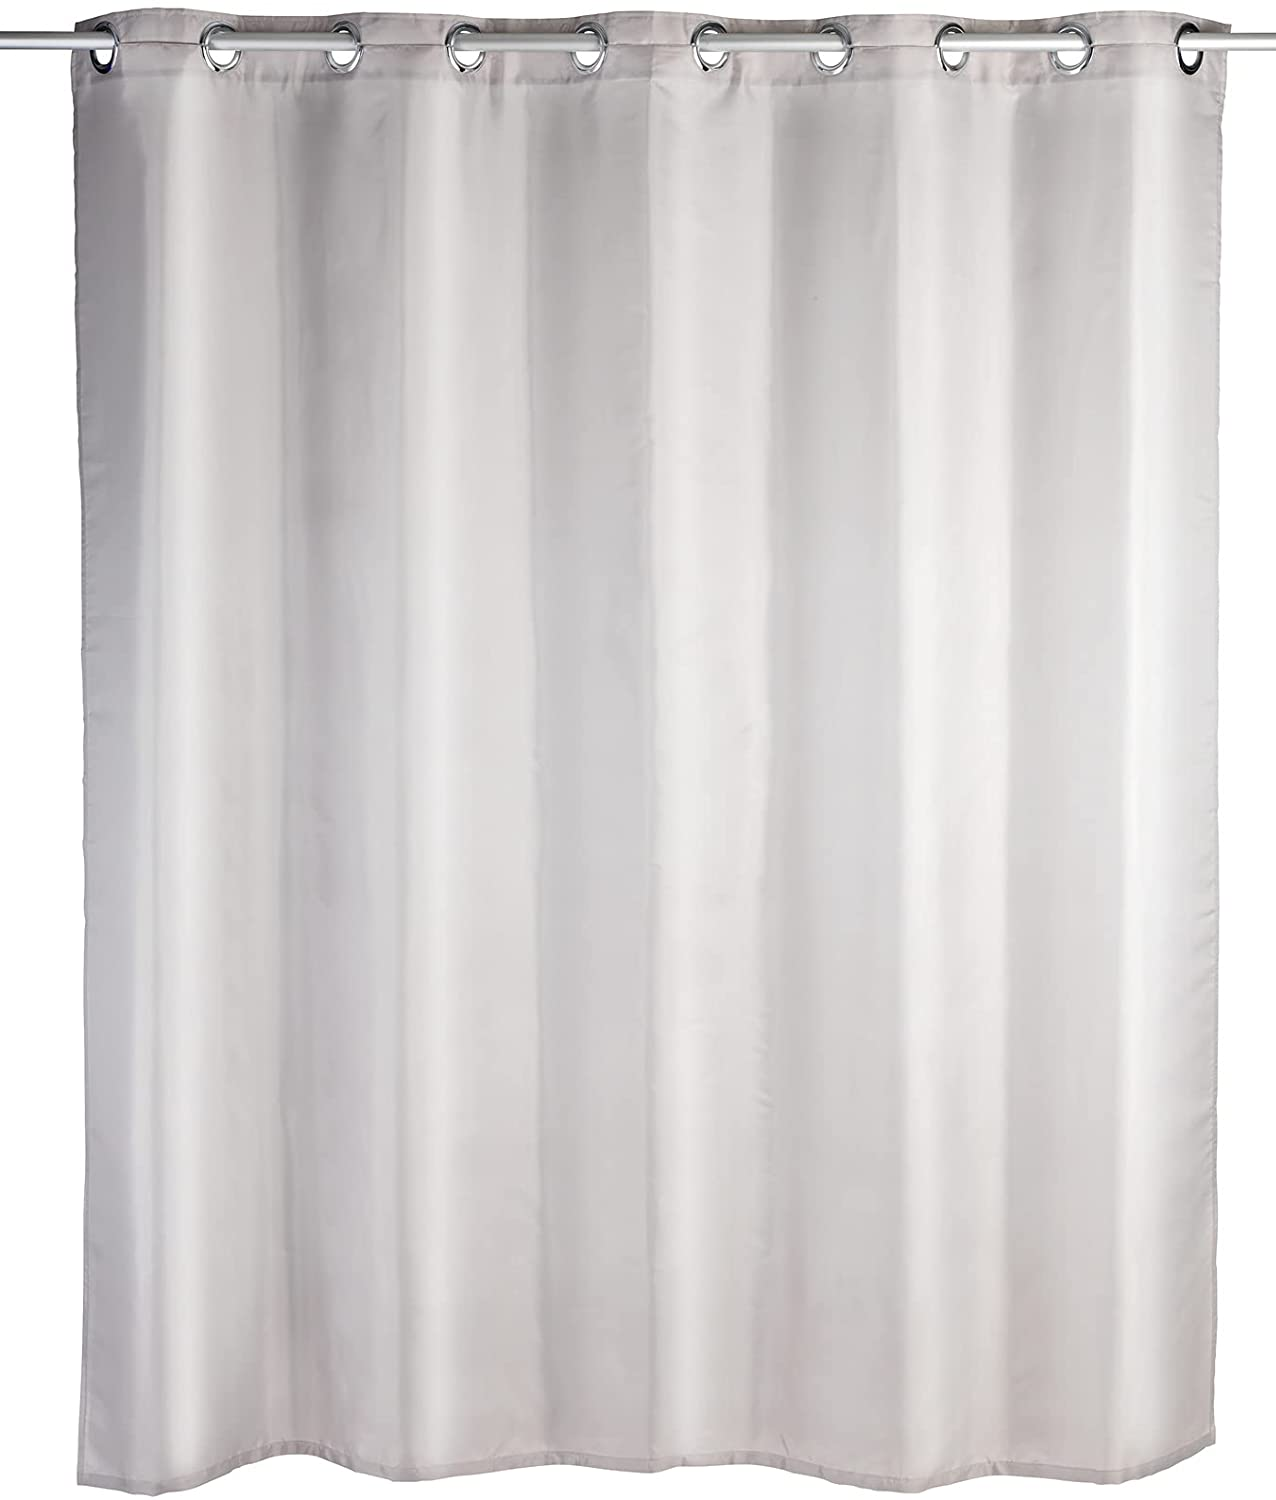 Duschvorhang Comfort Flex Taupe - Textil , waschbar, wasserabweisend, mit 12 Duschvorhangringen und integrierter Hängeeinrichtung, Polyester, 180 x 200 cm, Taupe